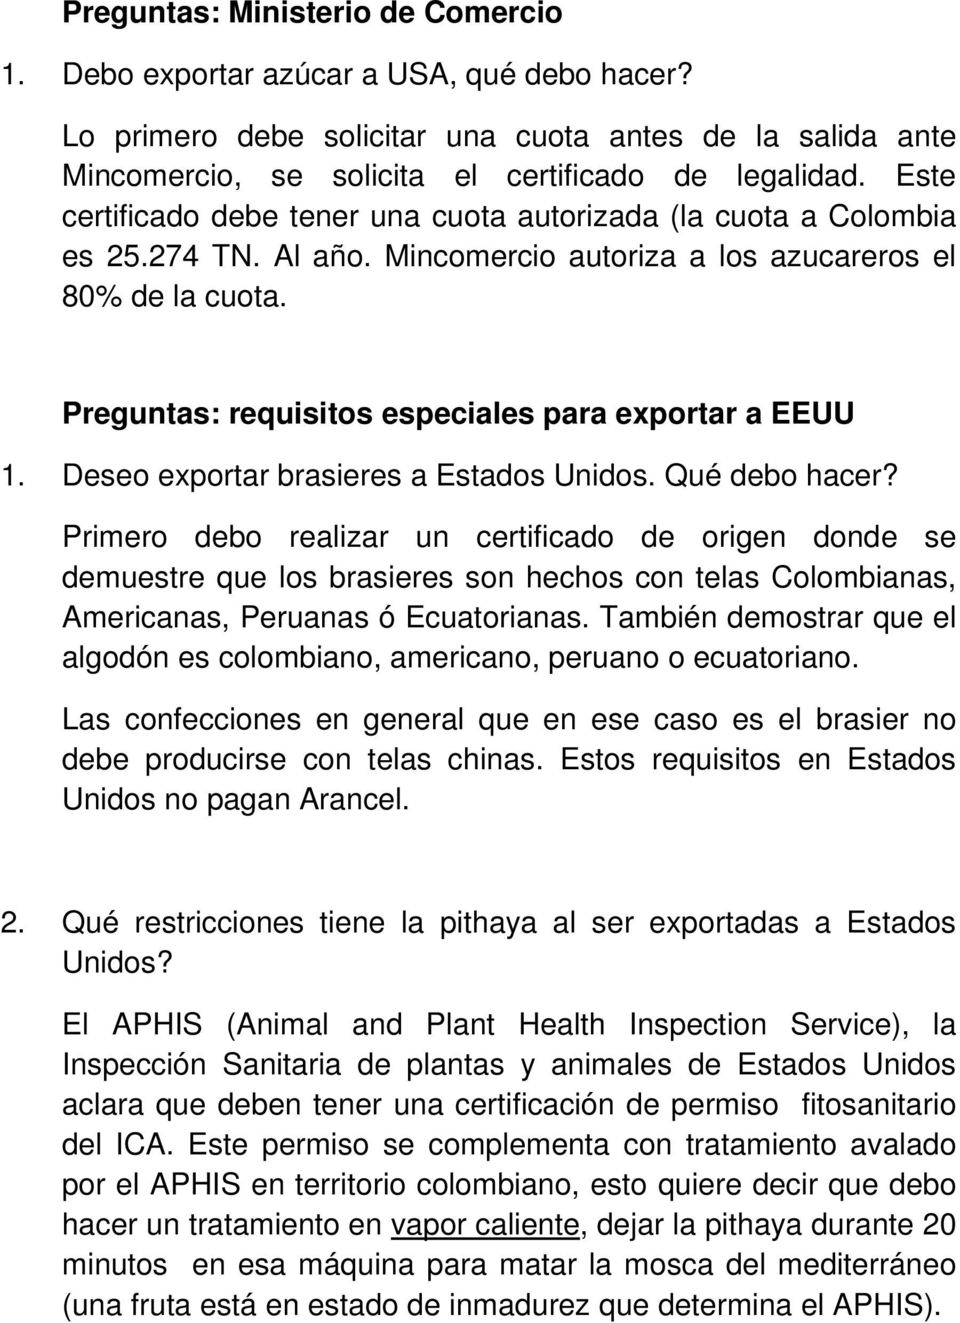 Preguntas: requisitos especiales para exportar a EEUU 1. Deseo exportar brasieres a Estados Unidos. Qué debo hacer?